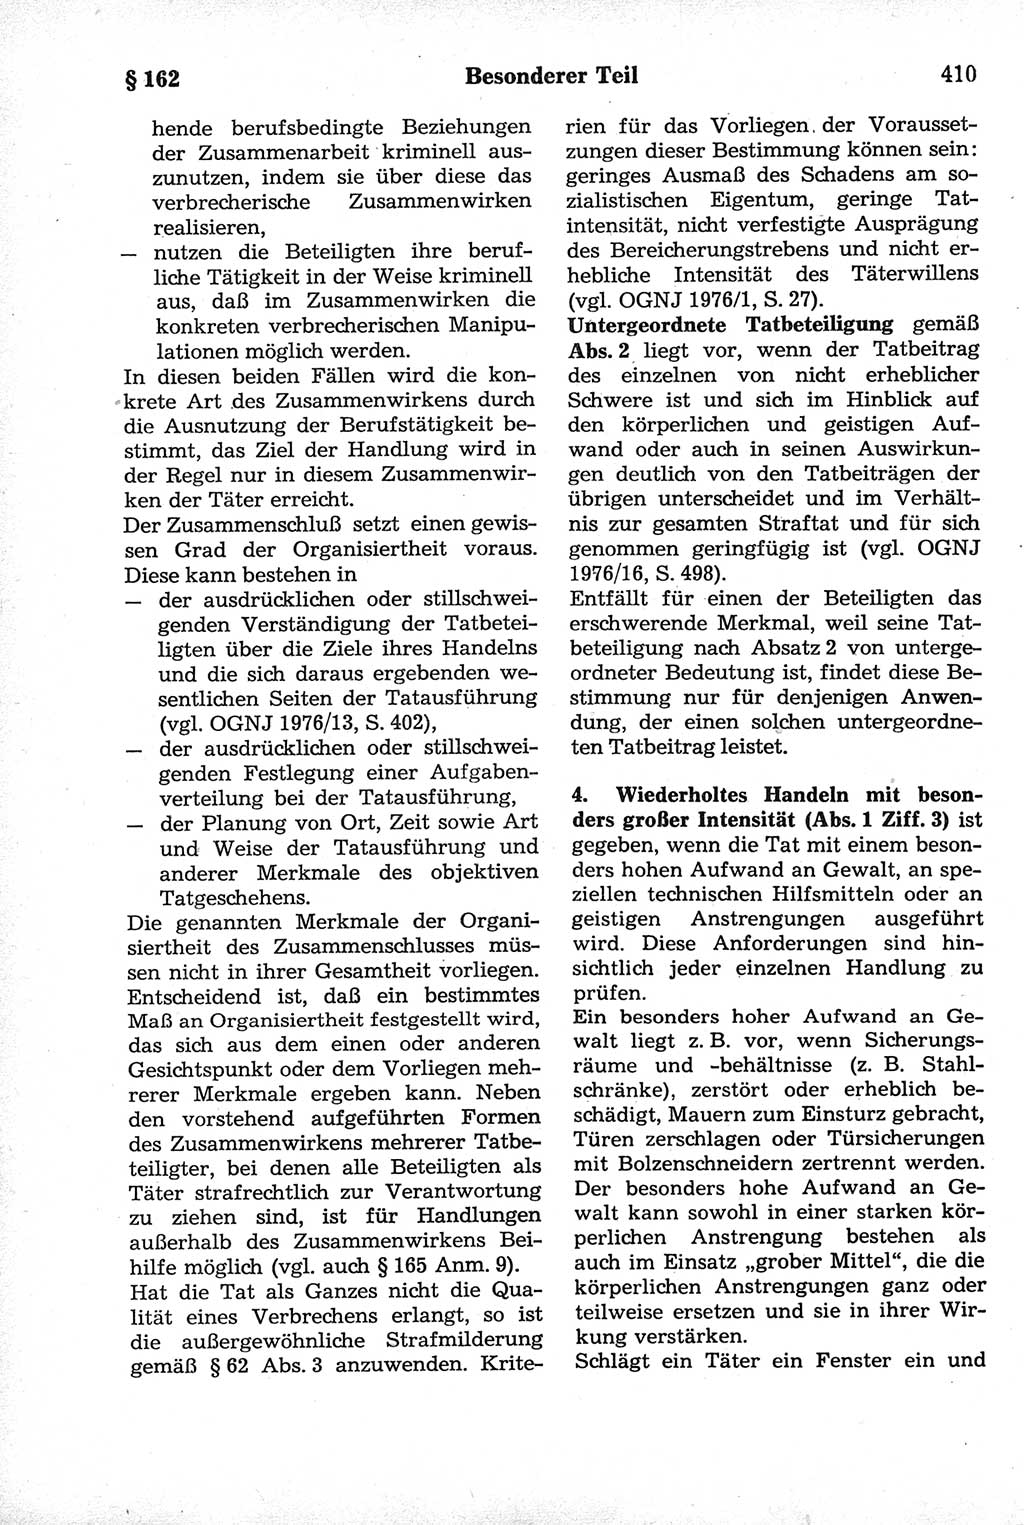 Strafrecht der Deutschen Demokratischen Republik (DDR), Kommentar zum Strafgesetzbuch (StGB) 1981, Seite 410 (Strafr. DDR Komm. StGB 1981, S. 410)